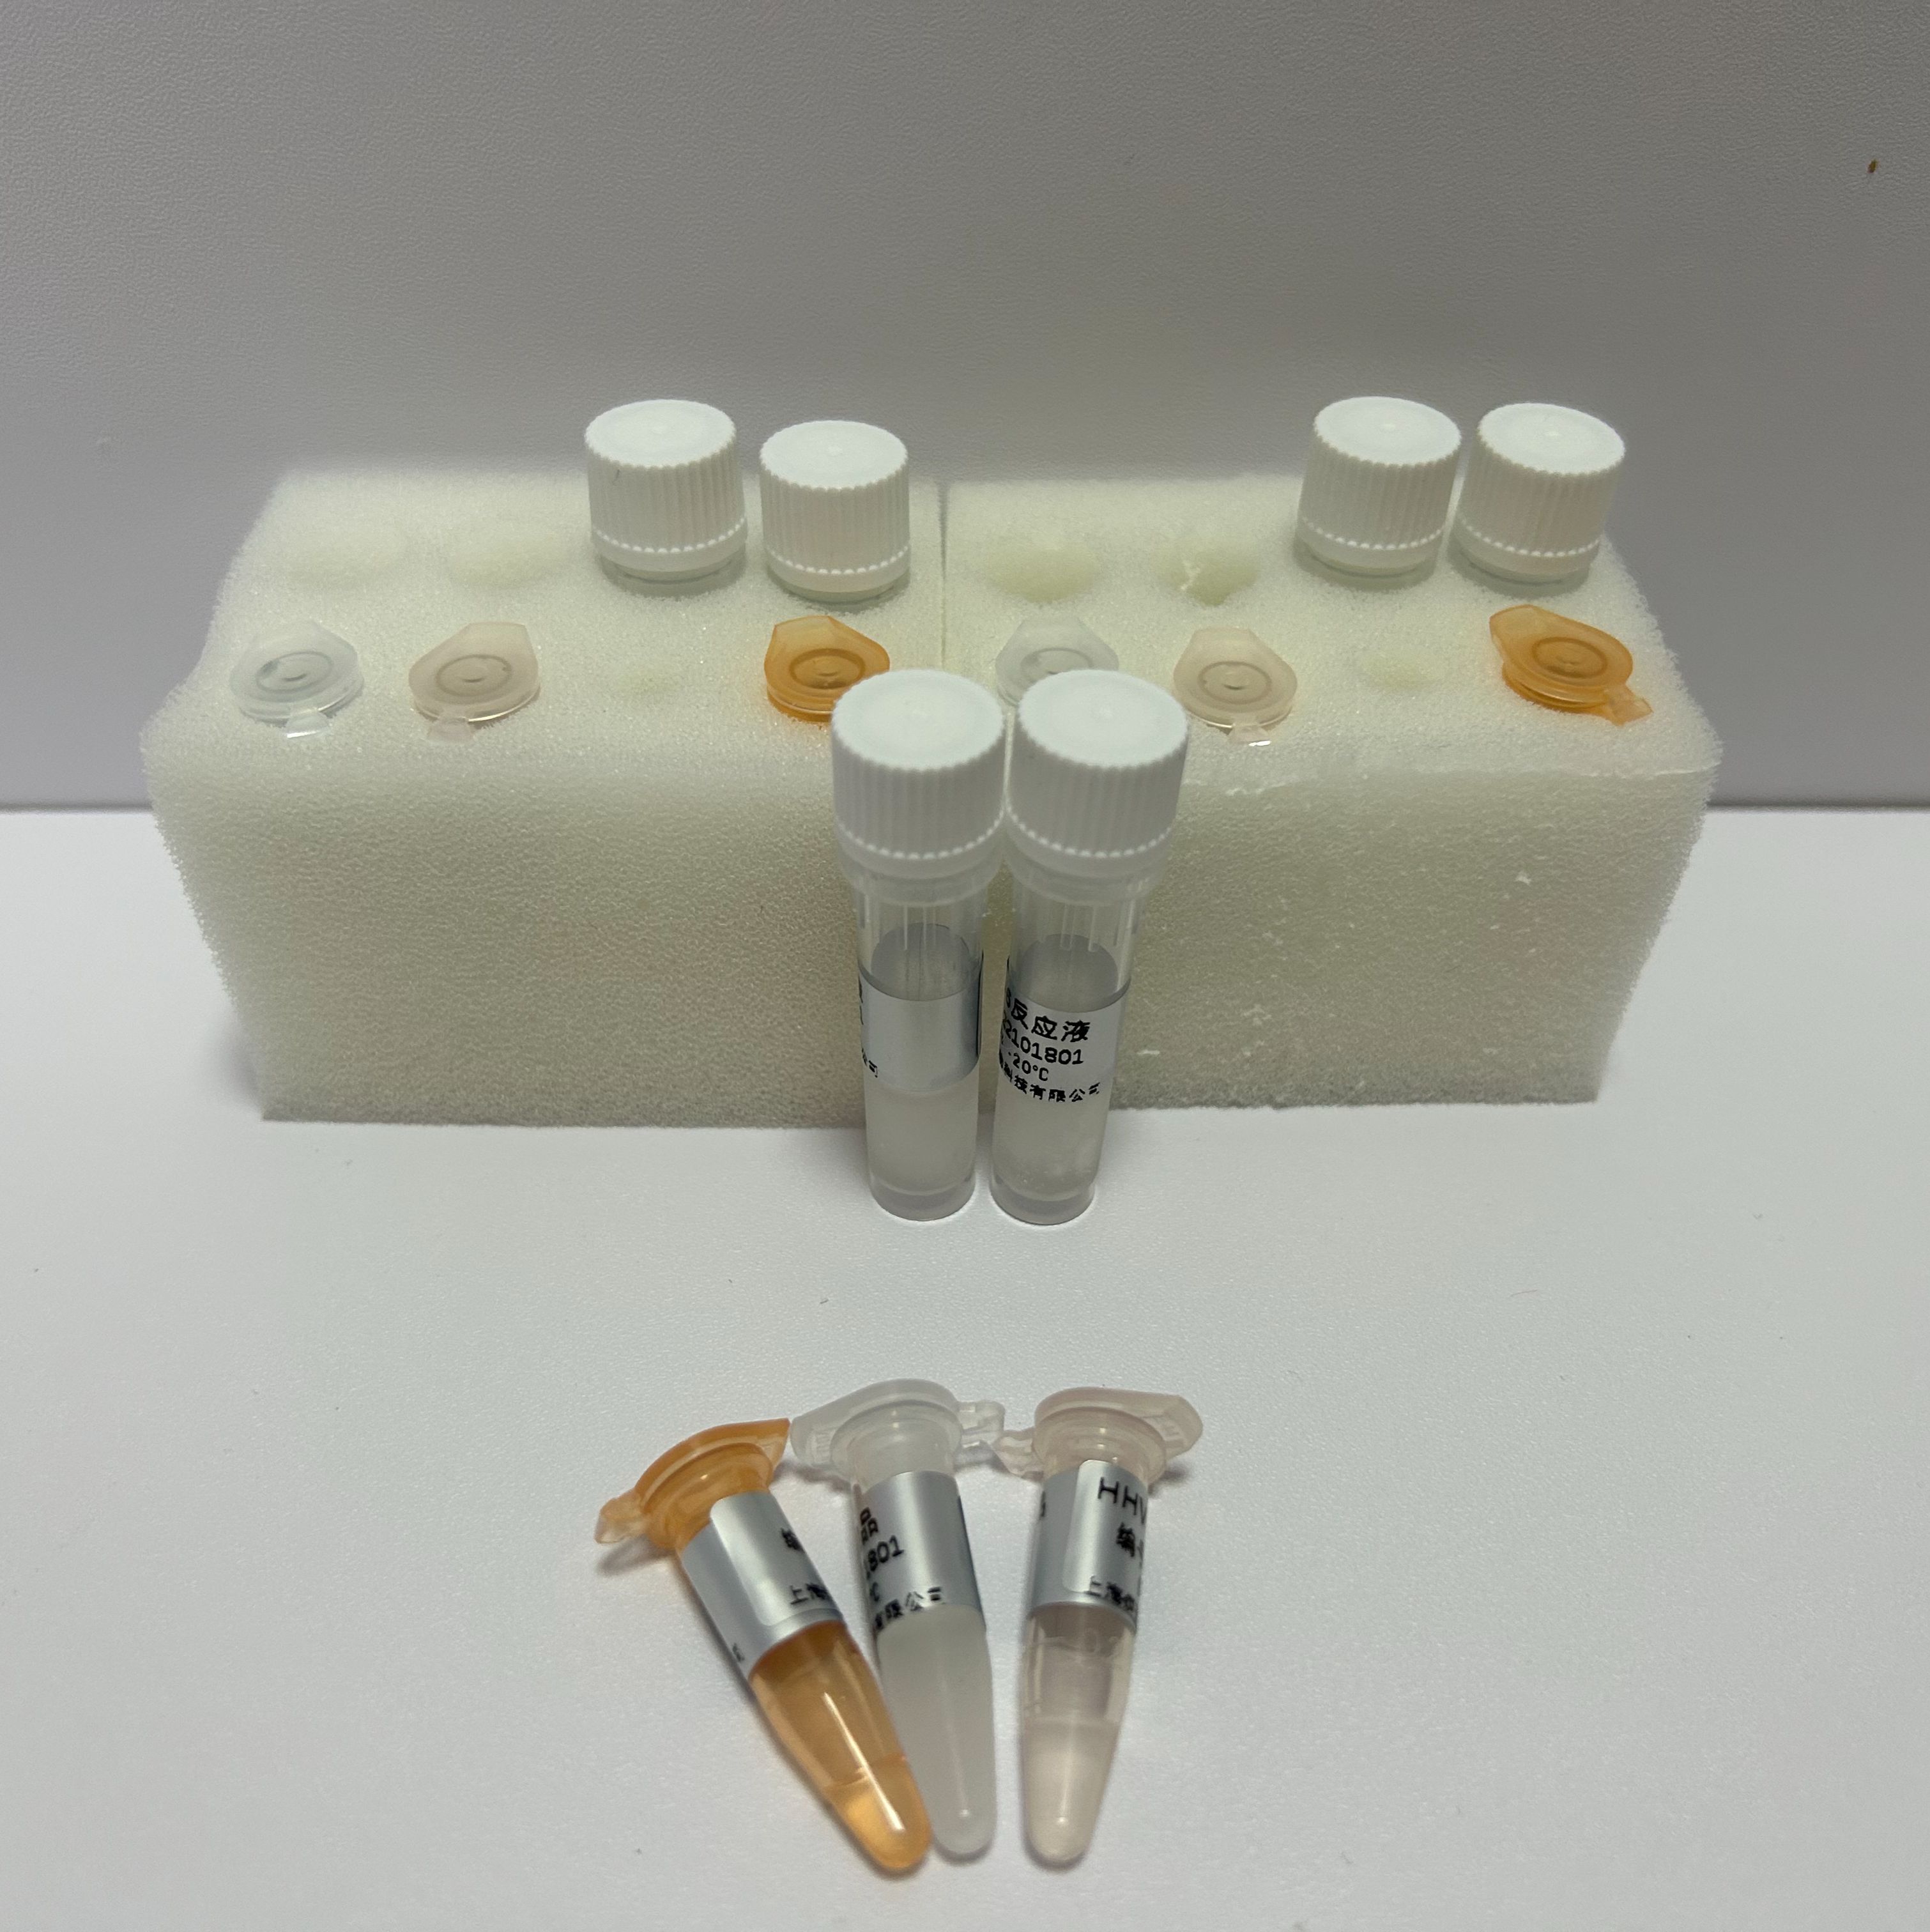 转基因品系水稻LLRice62 PCR试剂盒